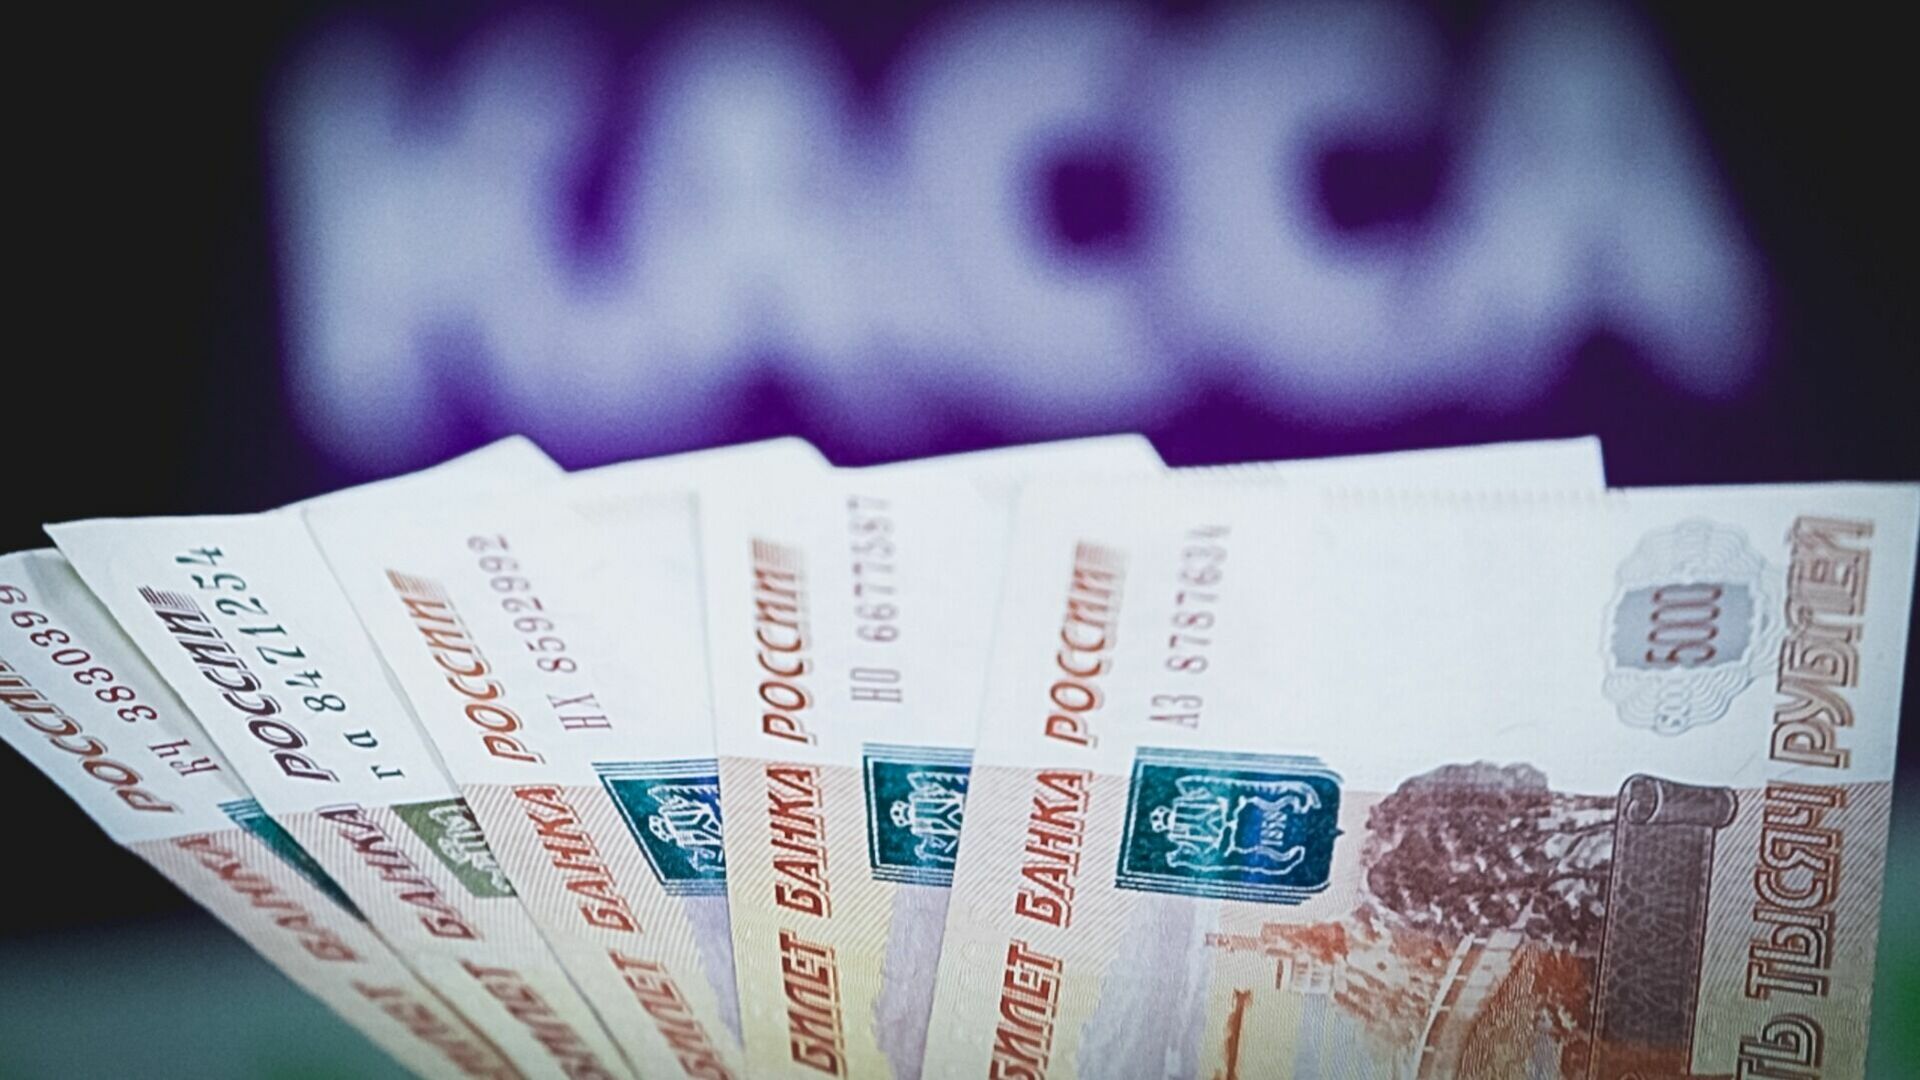 ВТБ увеличил портфель рублевых депозитов на 6% с начала года